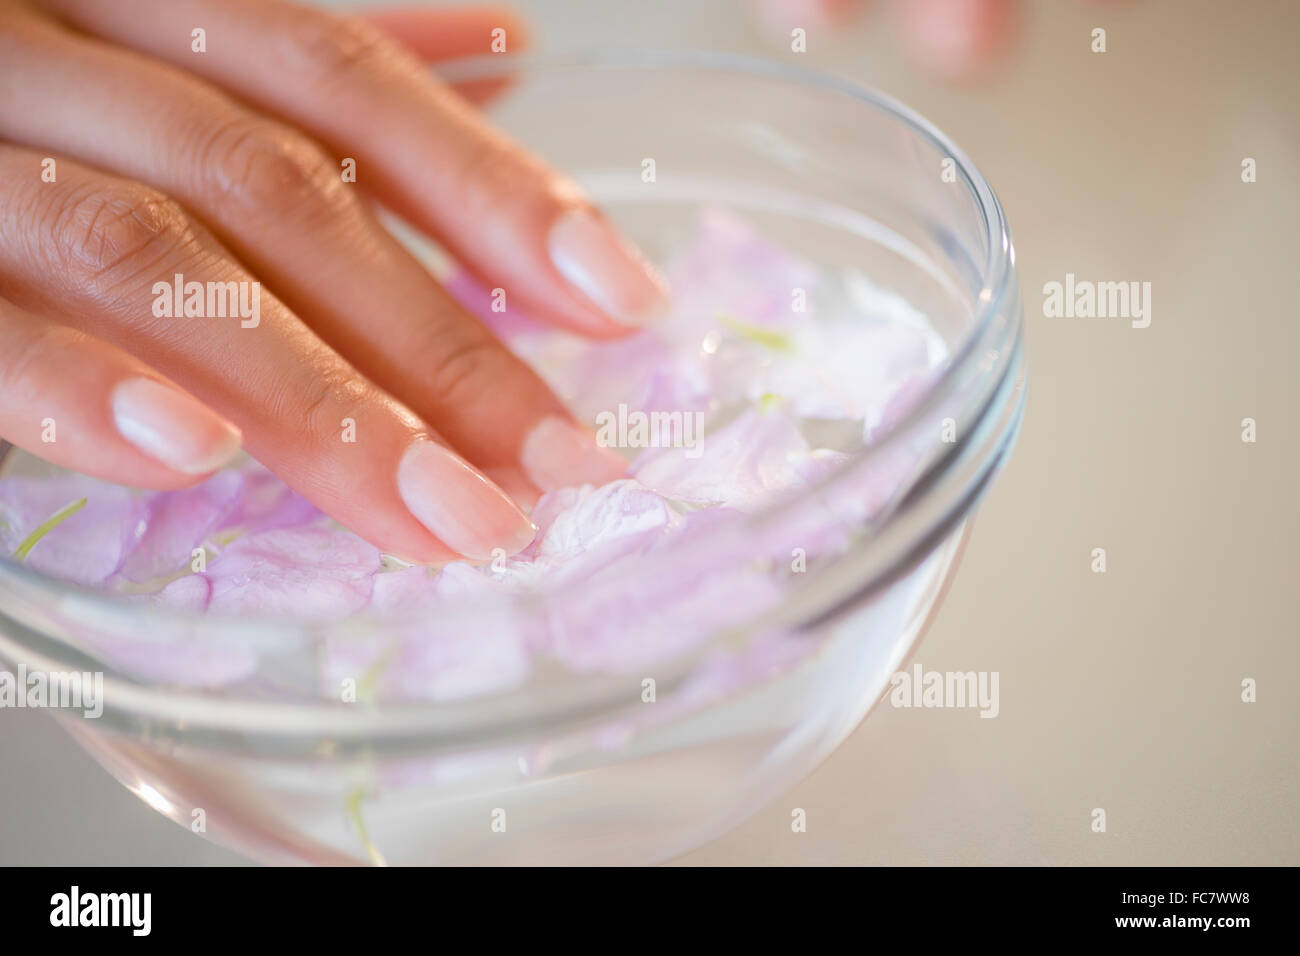 Soaking nails immagini e fotografie stock ad alta risoluzione - Alamy